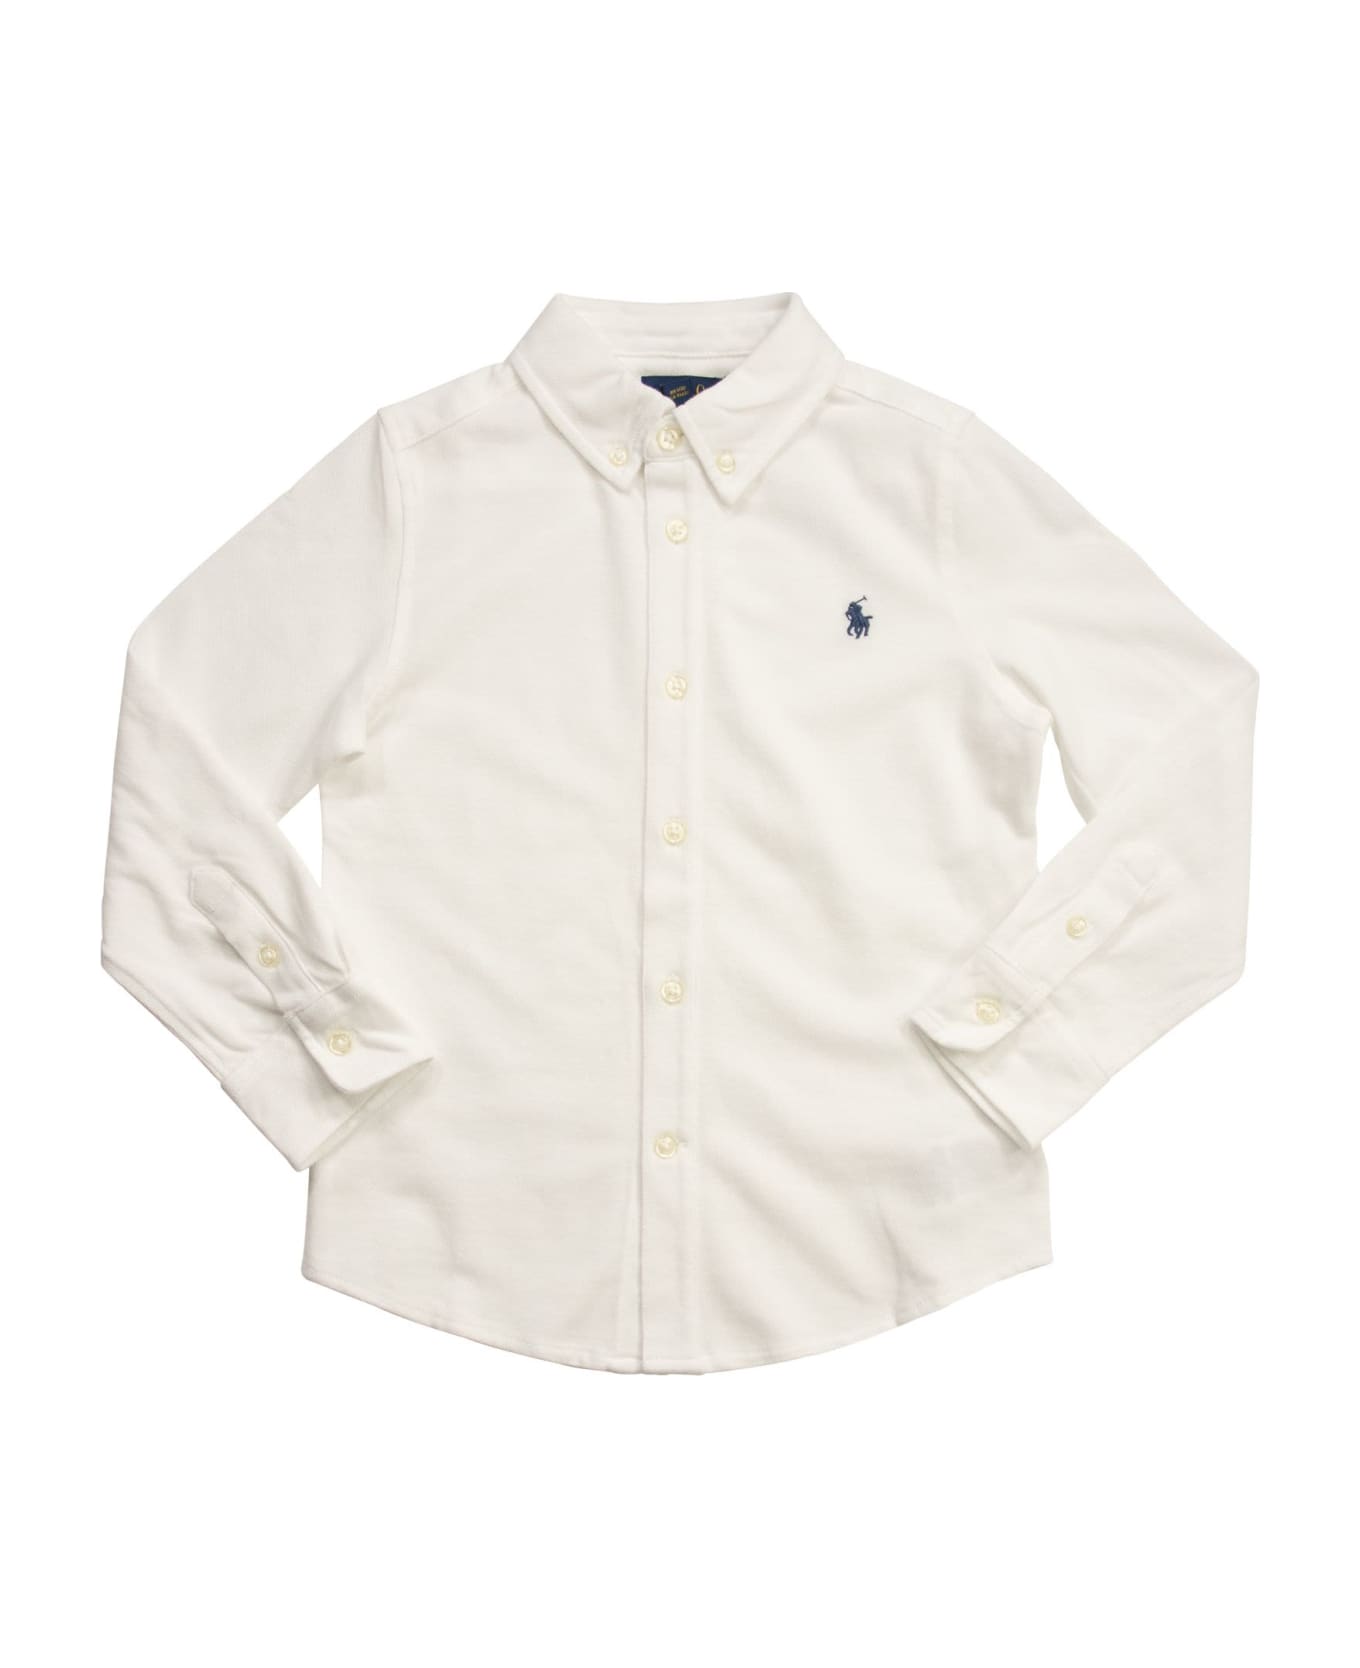 Polo Ralph Lauren Ultralight Cotton Pique Shirt - White